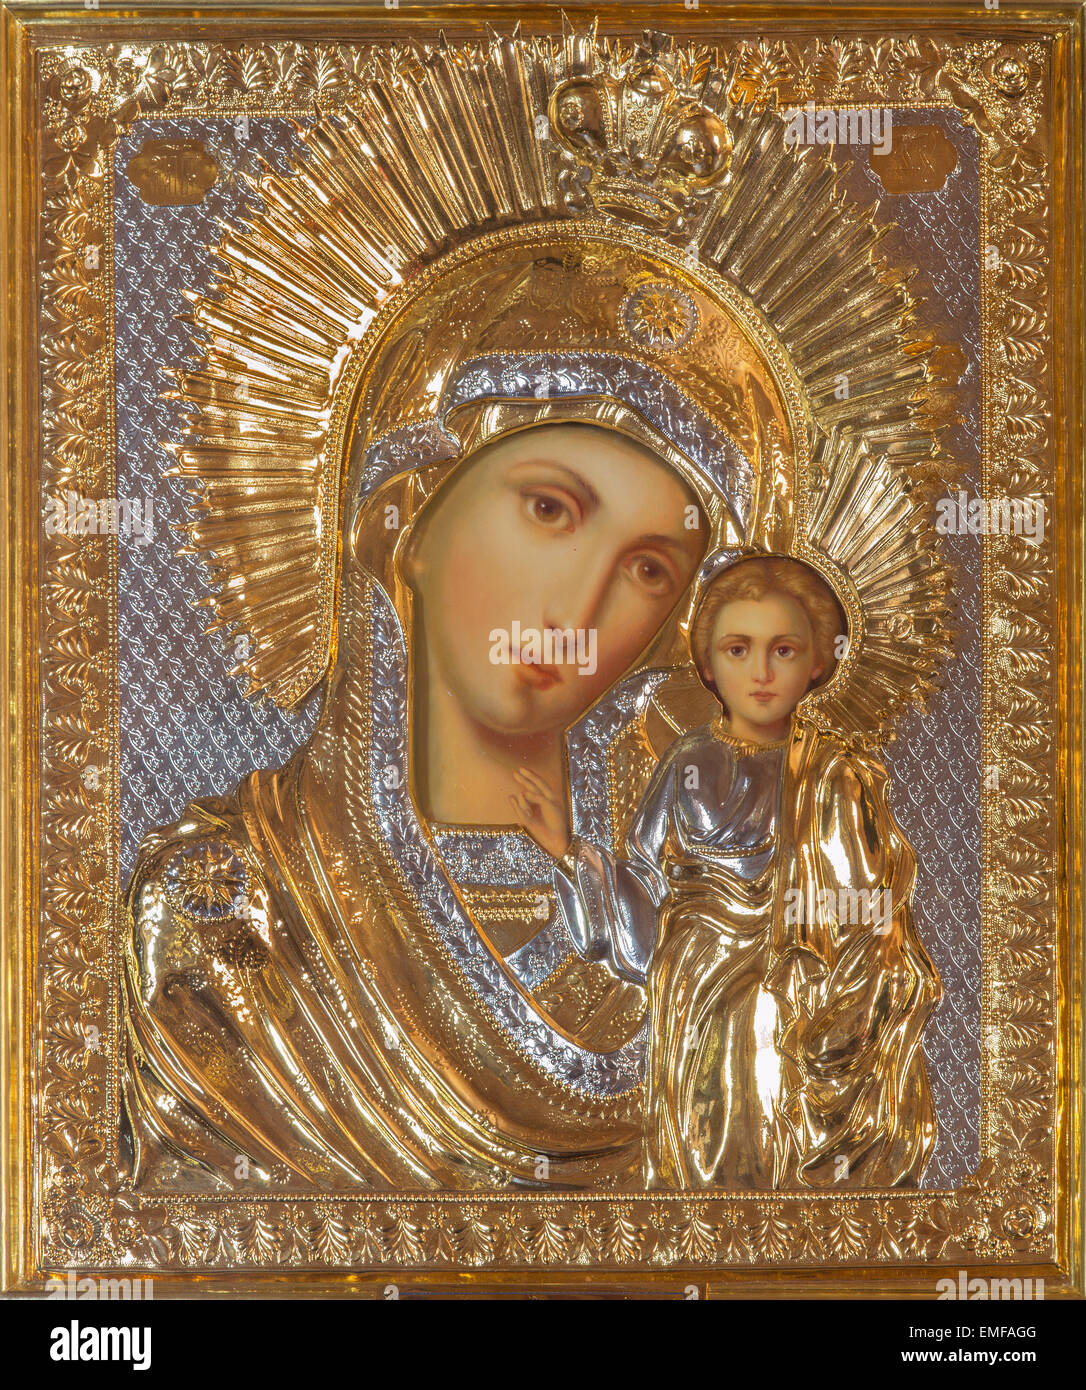 Gerusalemme, Israele - 5 Marzo 2015: l'icona della Madonna nella chiesa ortodossa russa di Santa Maria di Magdala Foto Stock